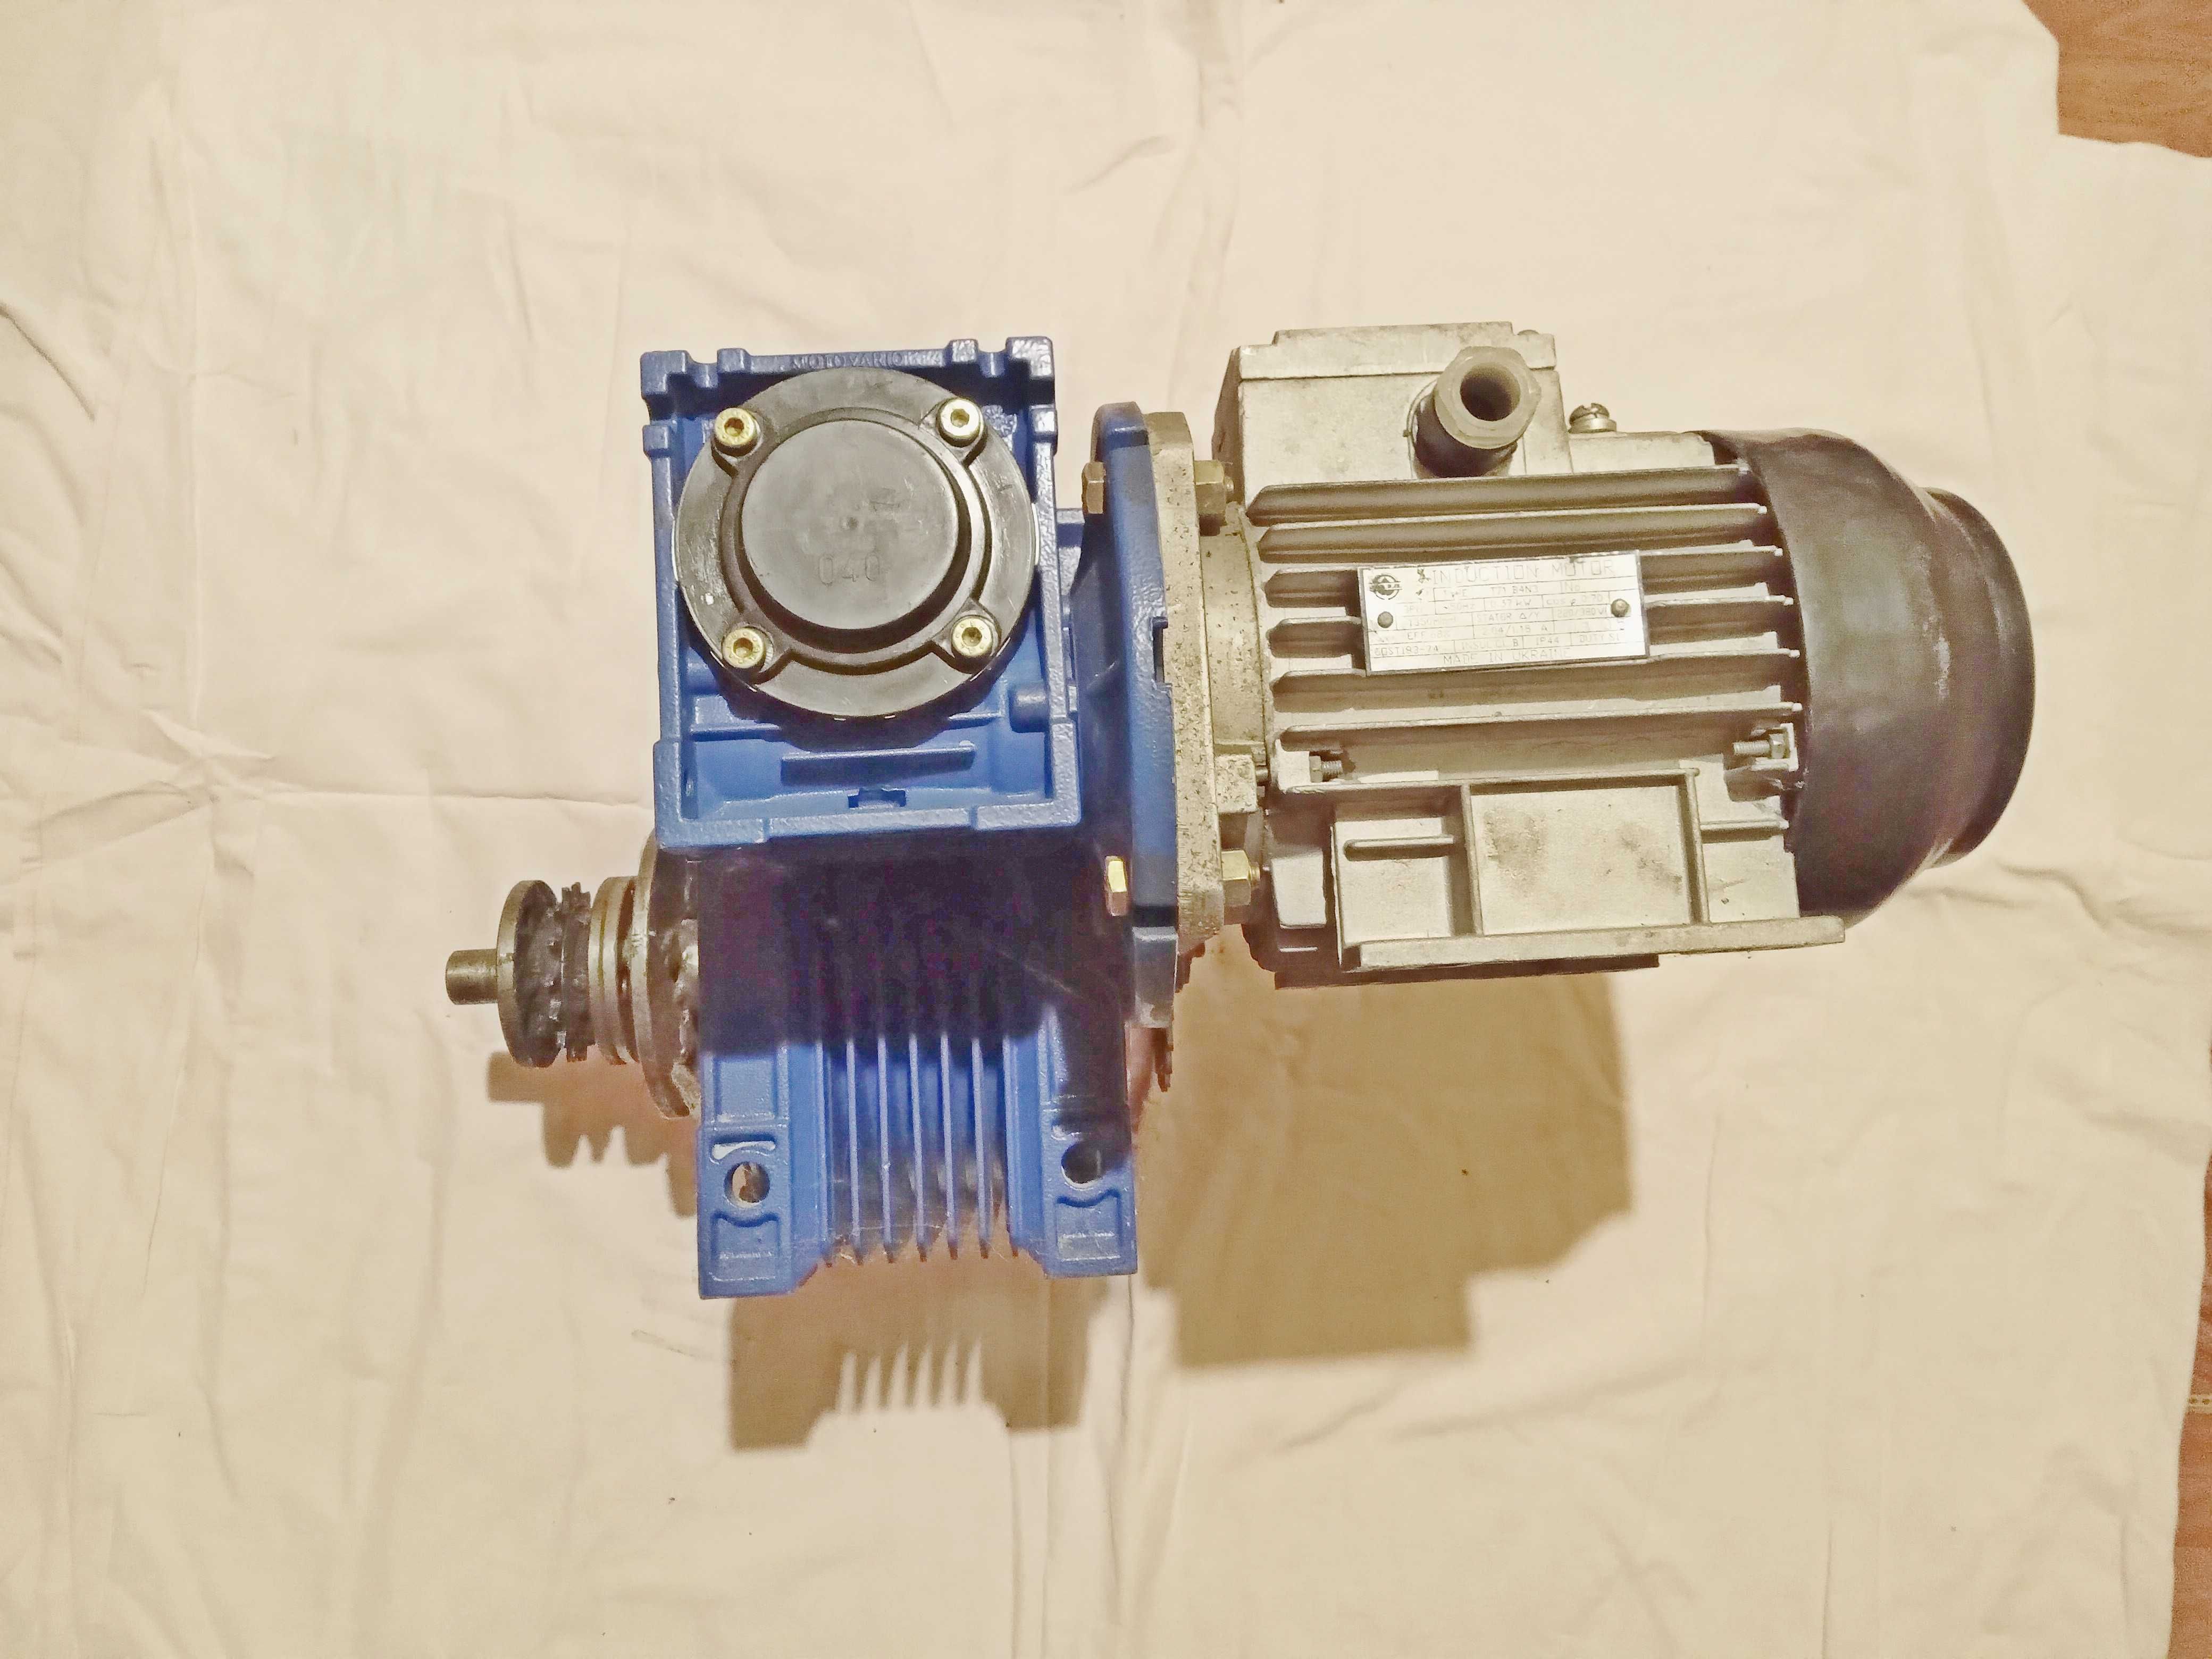 Недорого! Мотор редуктор NMRV-040 и NMRV-090, Италия